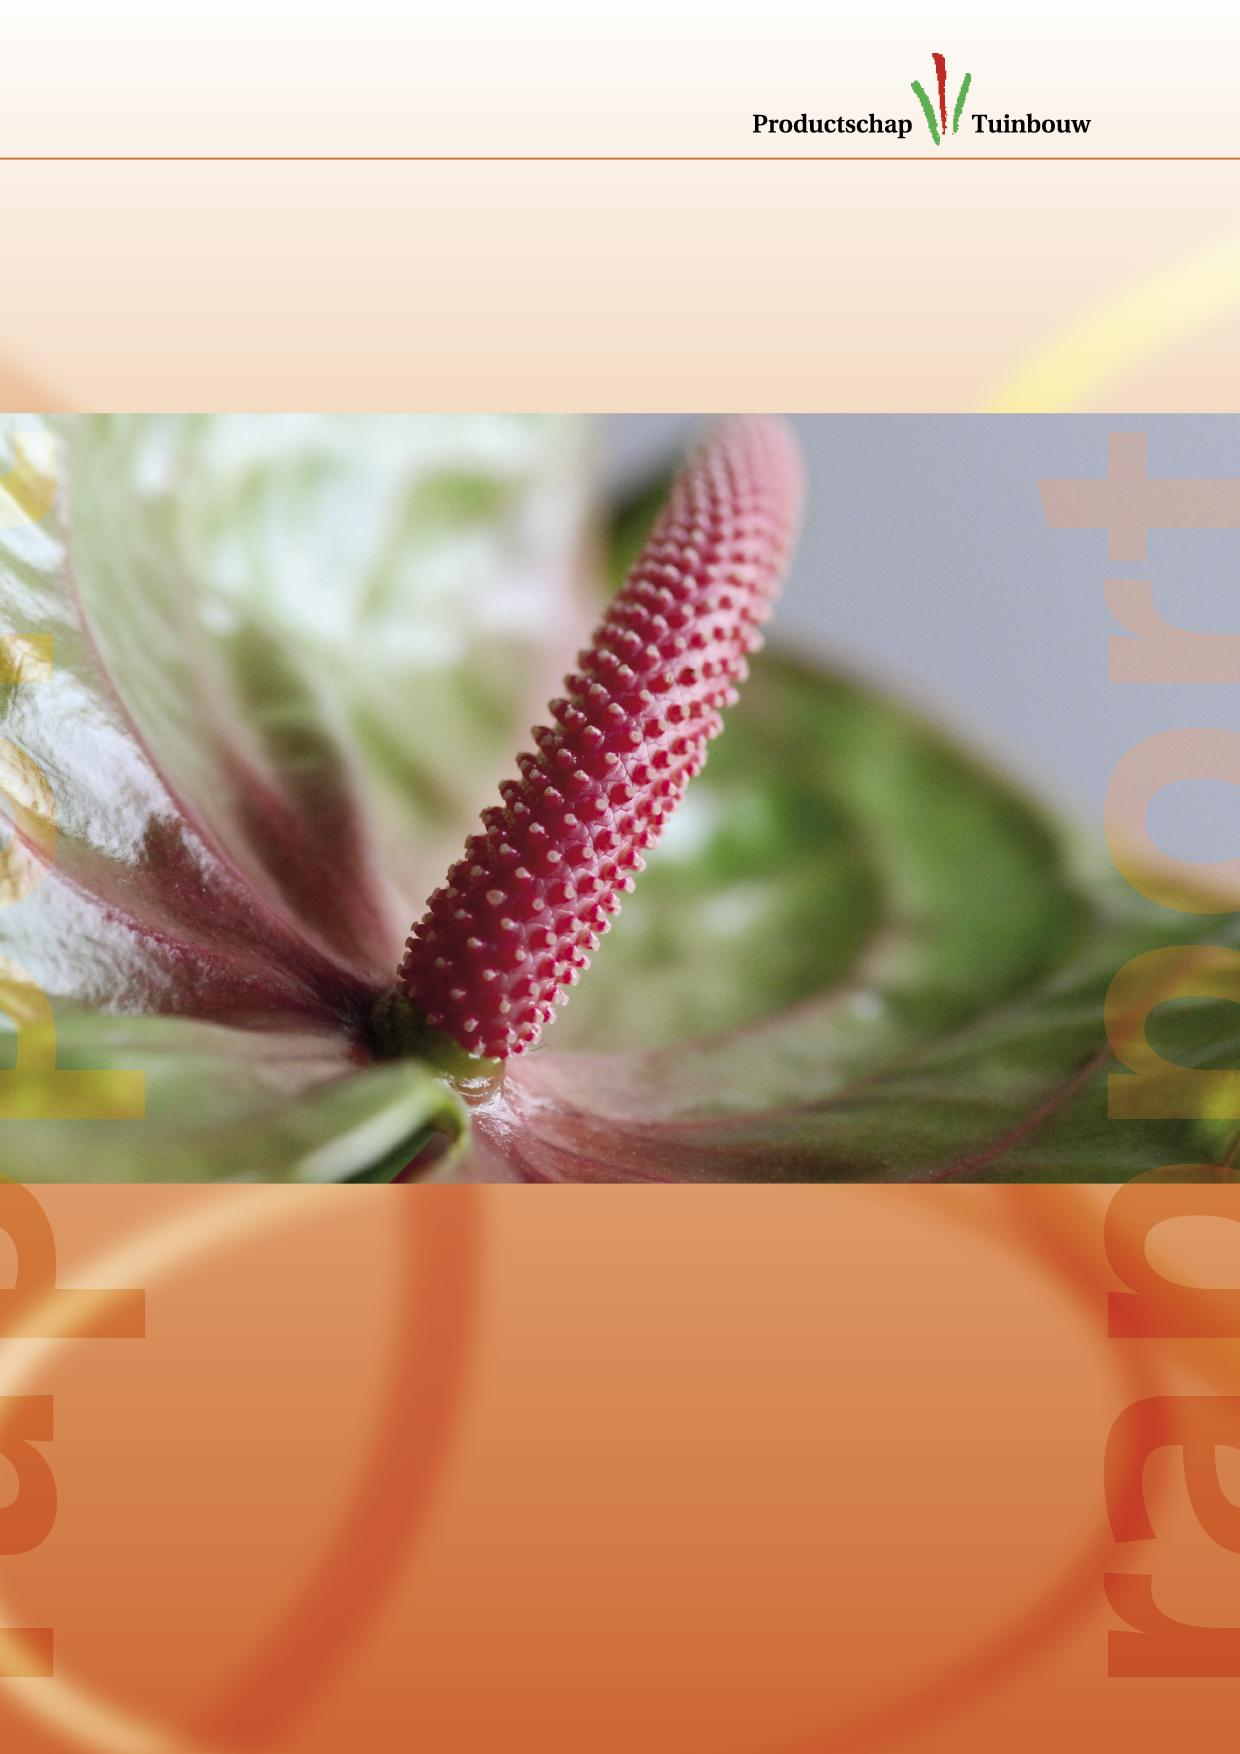 Anthurium: veelzijdige en bijzondere bloem Onderzoek onder bloemisten (NL, DE, FR, UK) en consumenten (NL, DE, FR, UK, ES, IT) naar